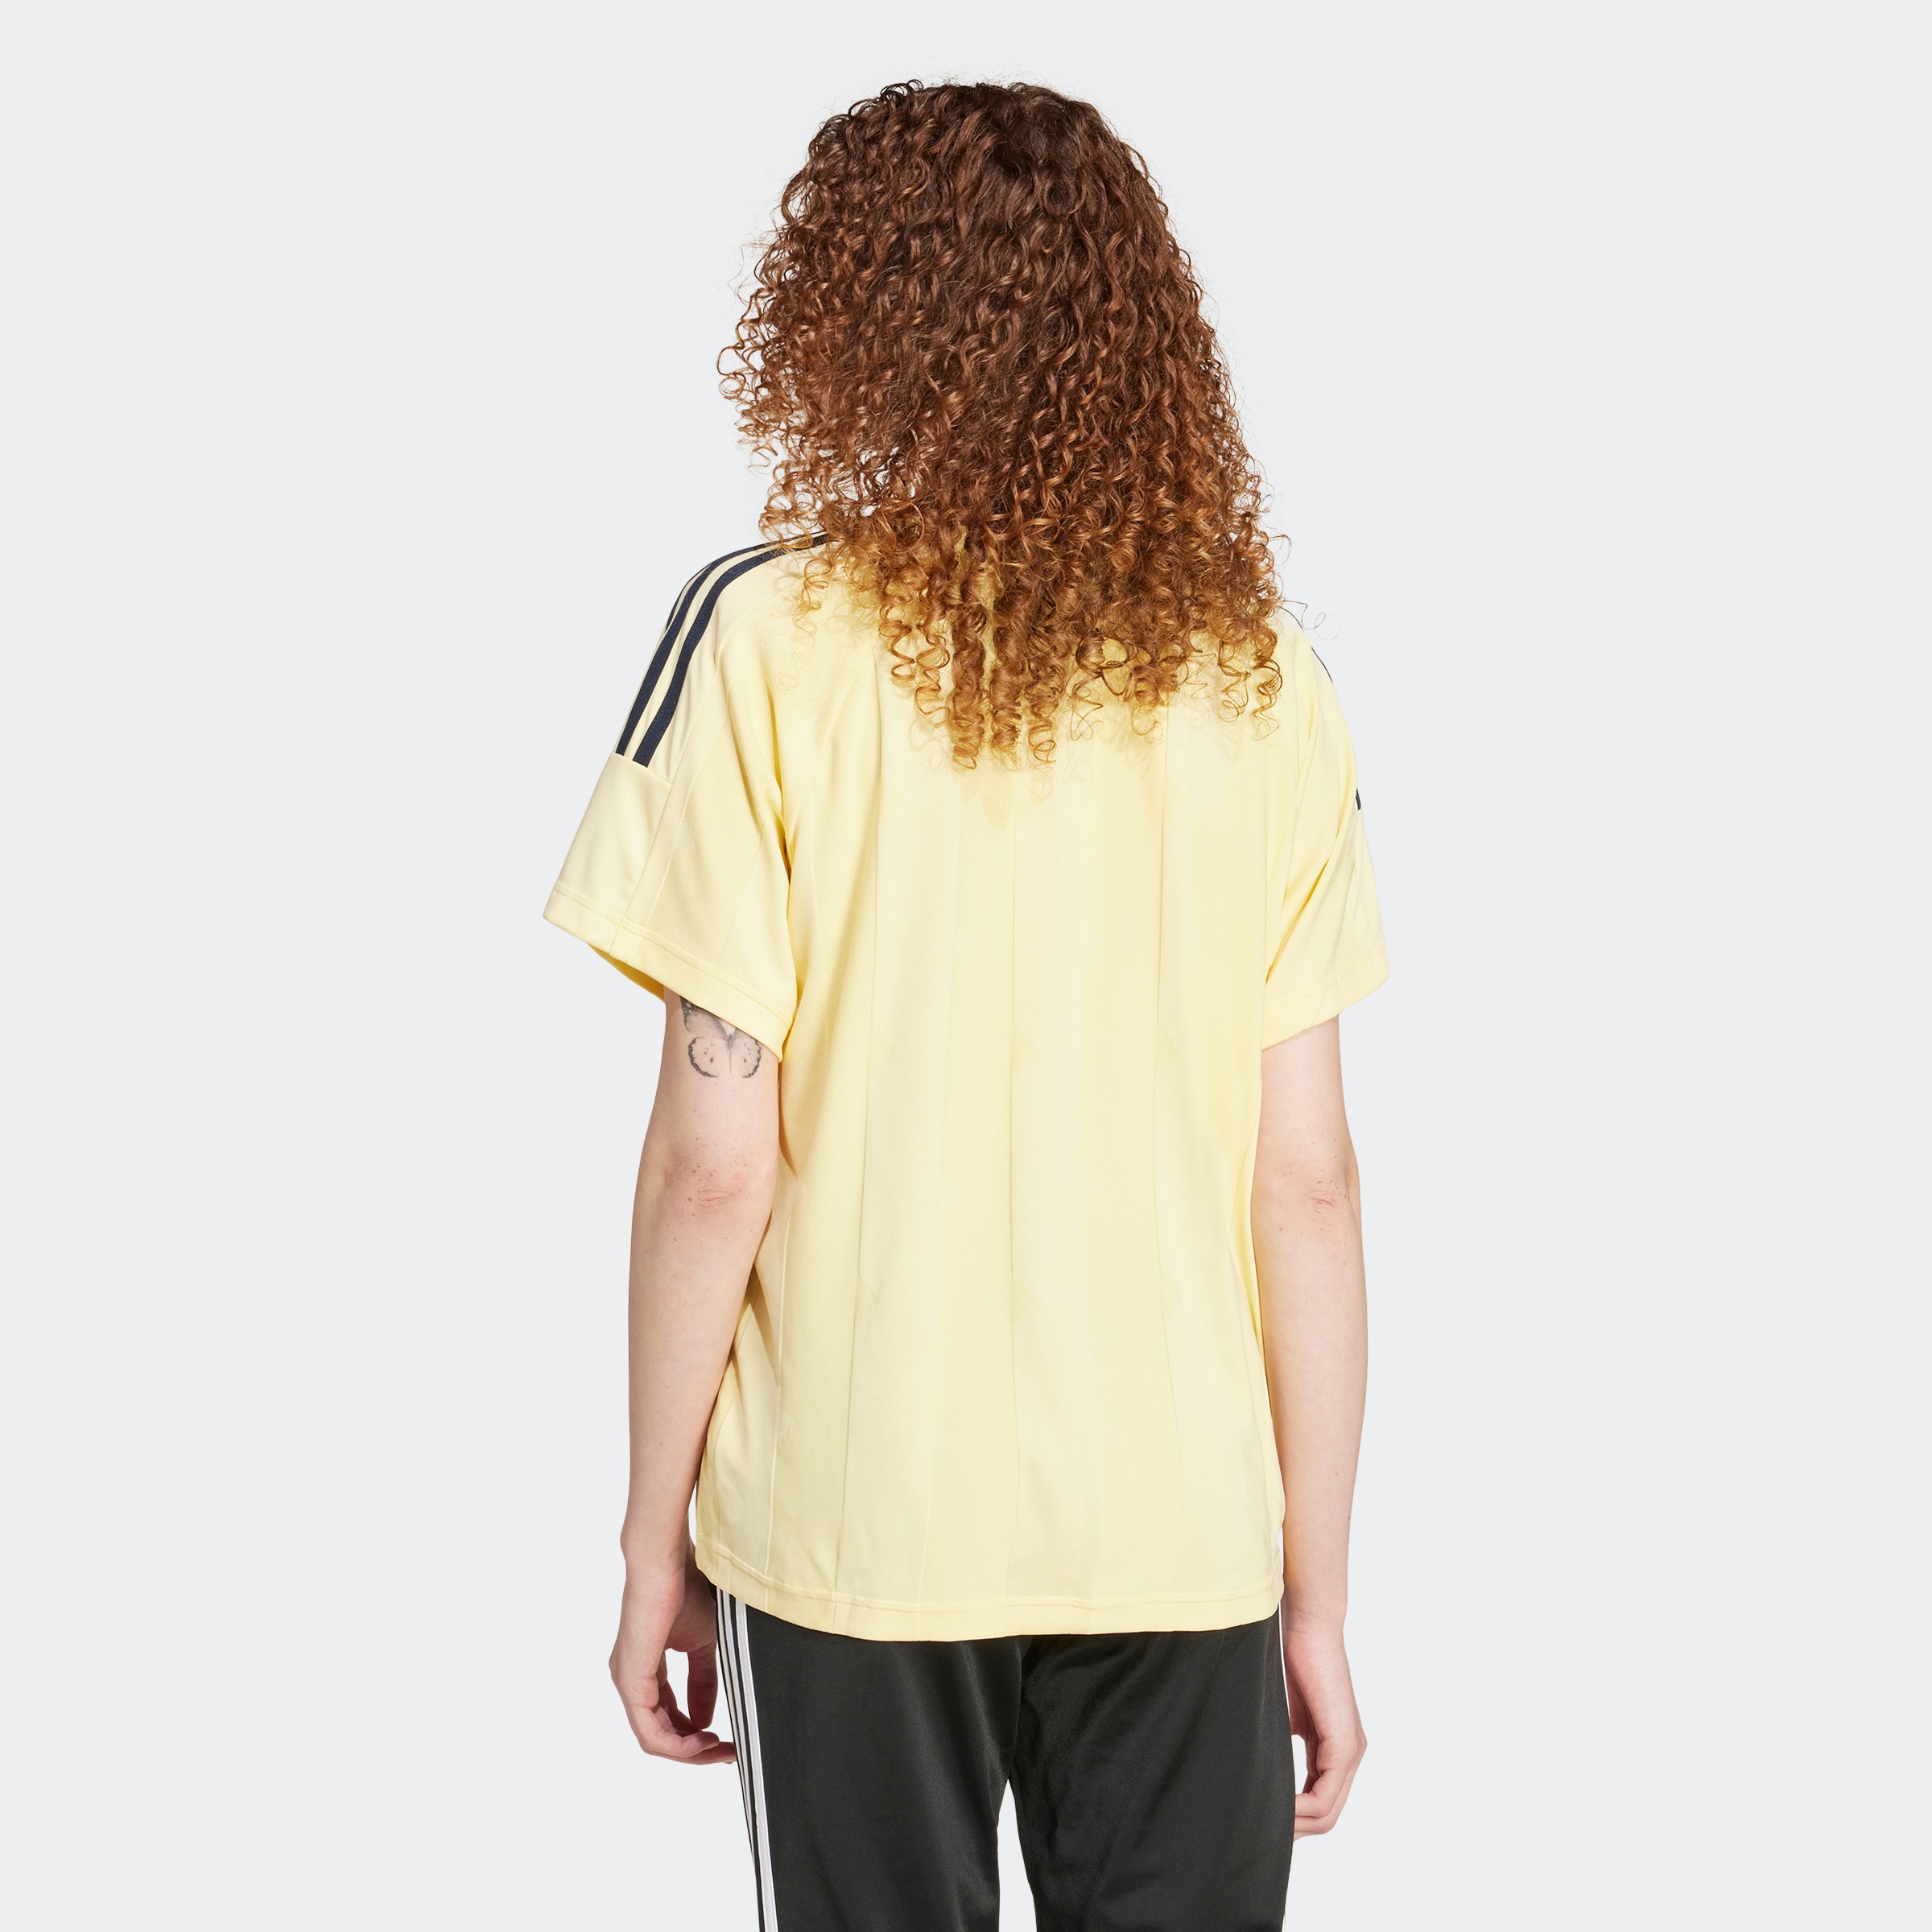 adidas Sportswear T-Shirt »W TIRO Q3 BOYFT«